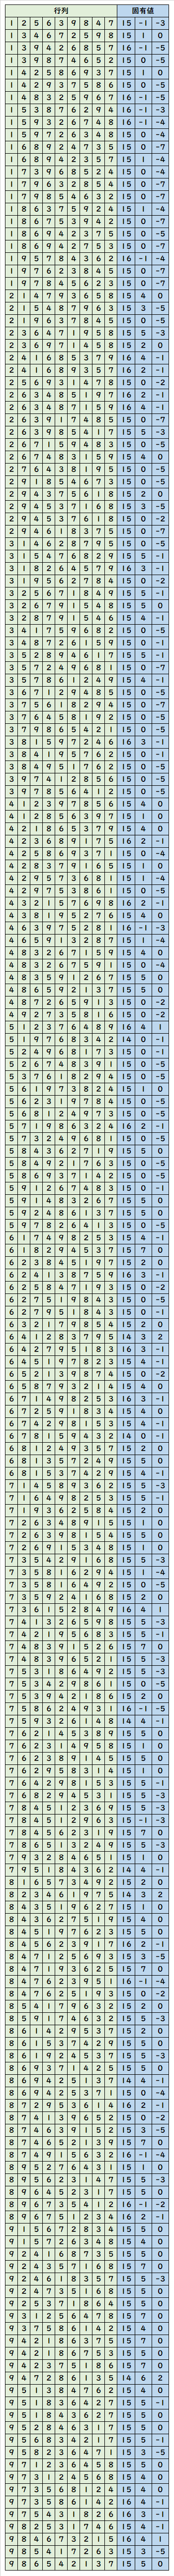 1から9までの数字を一回ずつ使った3 3の行列のうち 固有値がすべて整数になる組み合わせ となりのぽぽろ